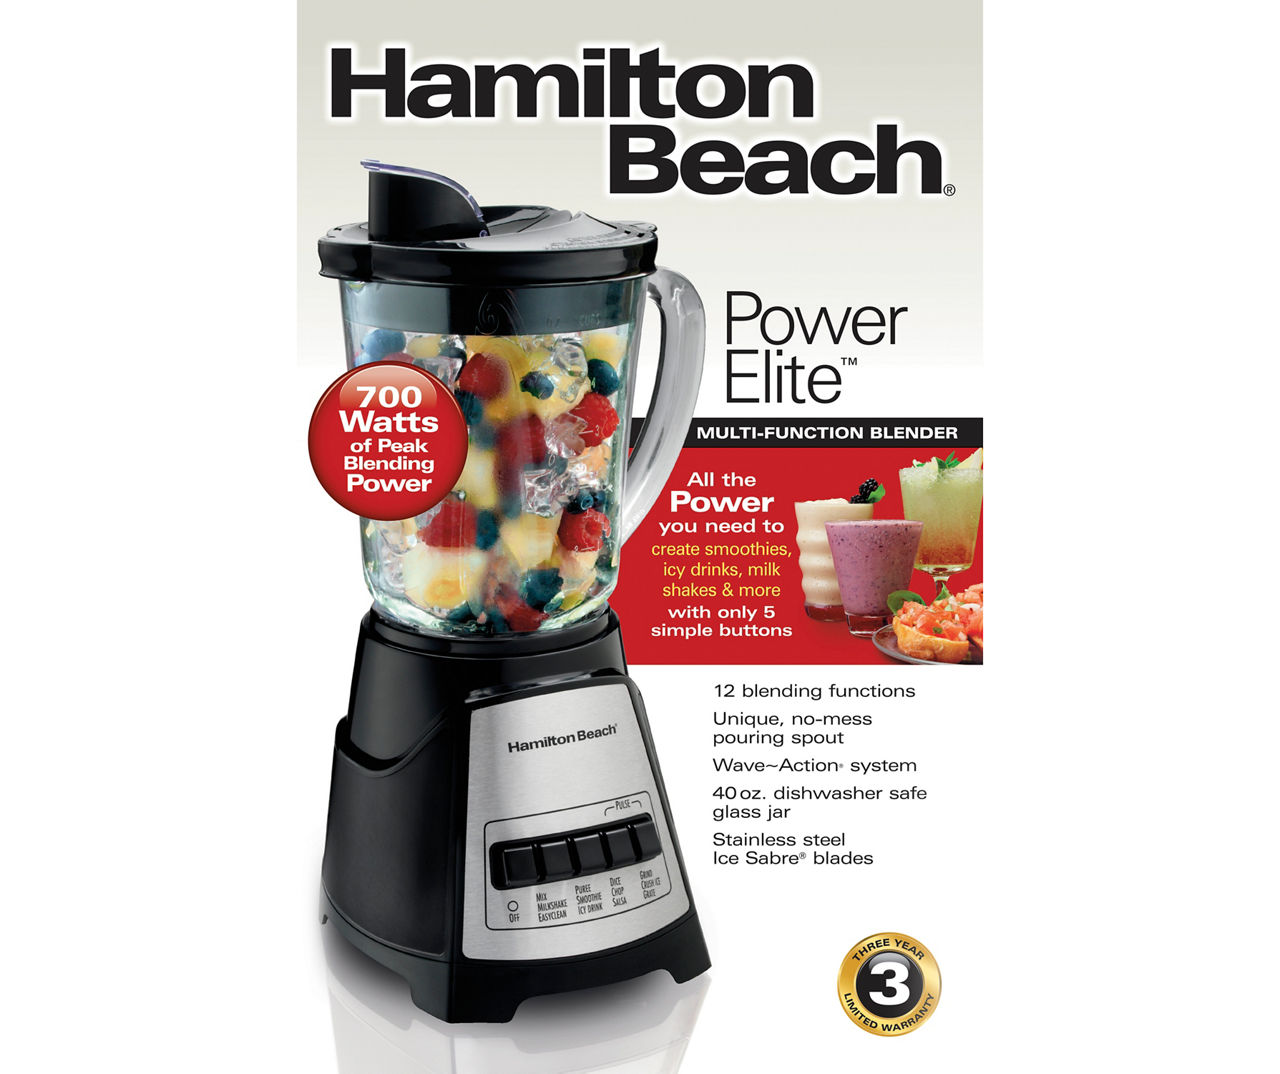 Hamilton Beach Power Elite Multi-function Blender - Black